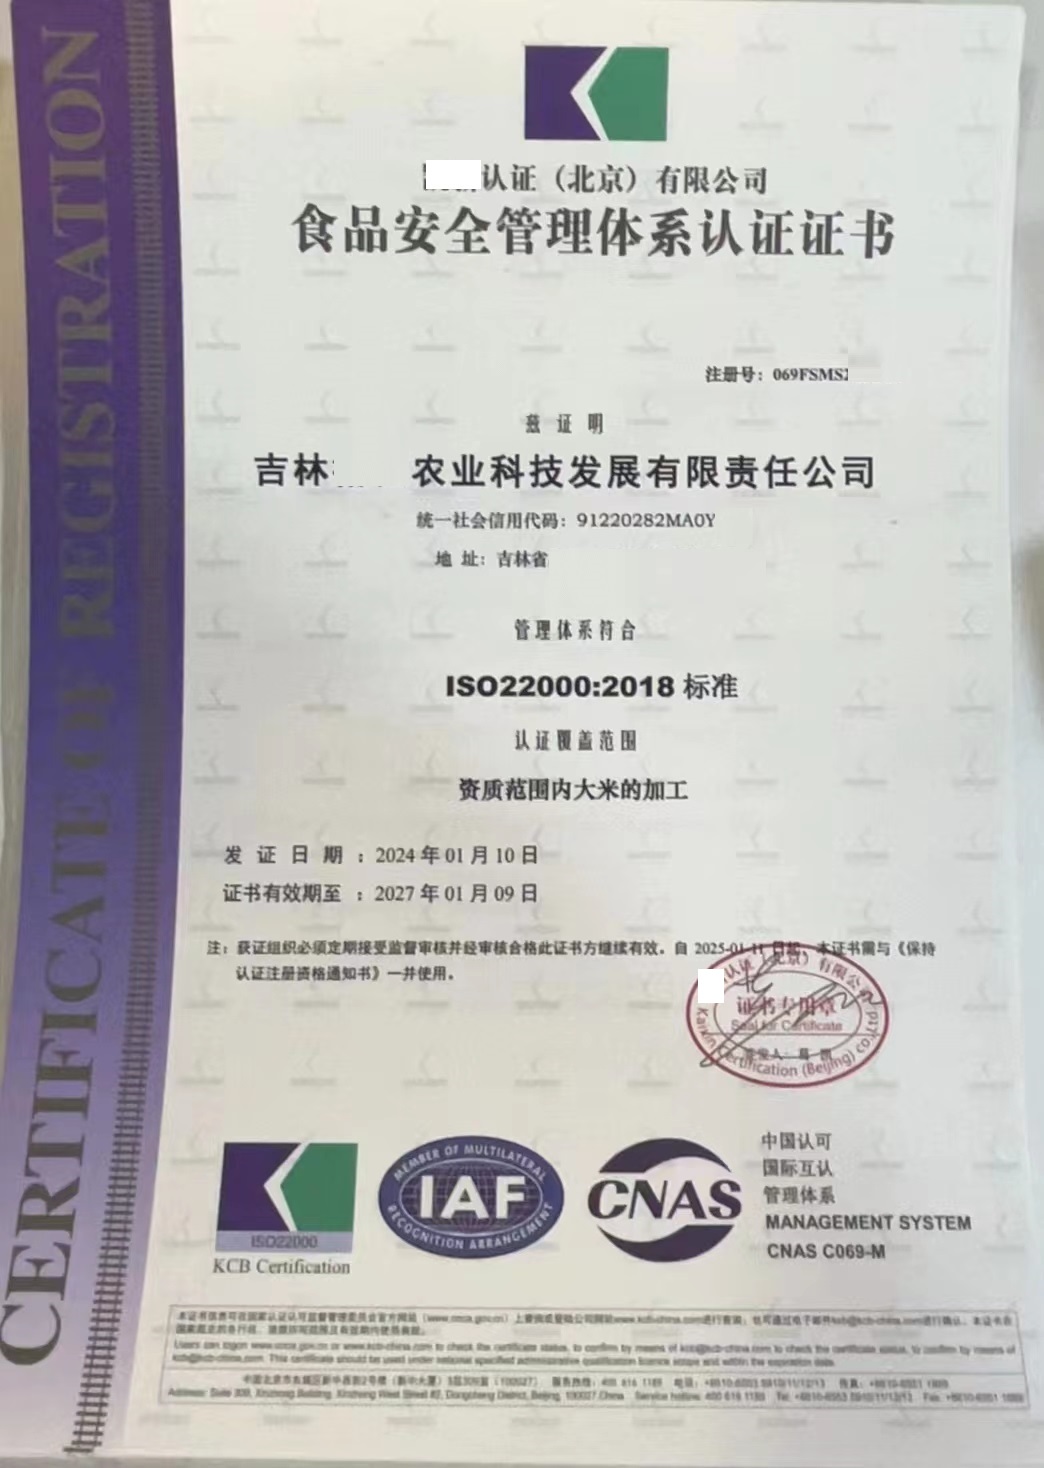 恭喜  吉林**农业科技发展有限责任公司  获得食品安全管理体系认证证书